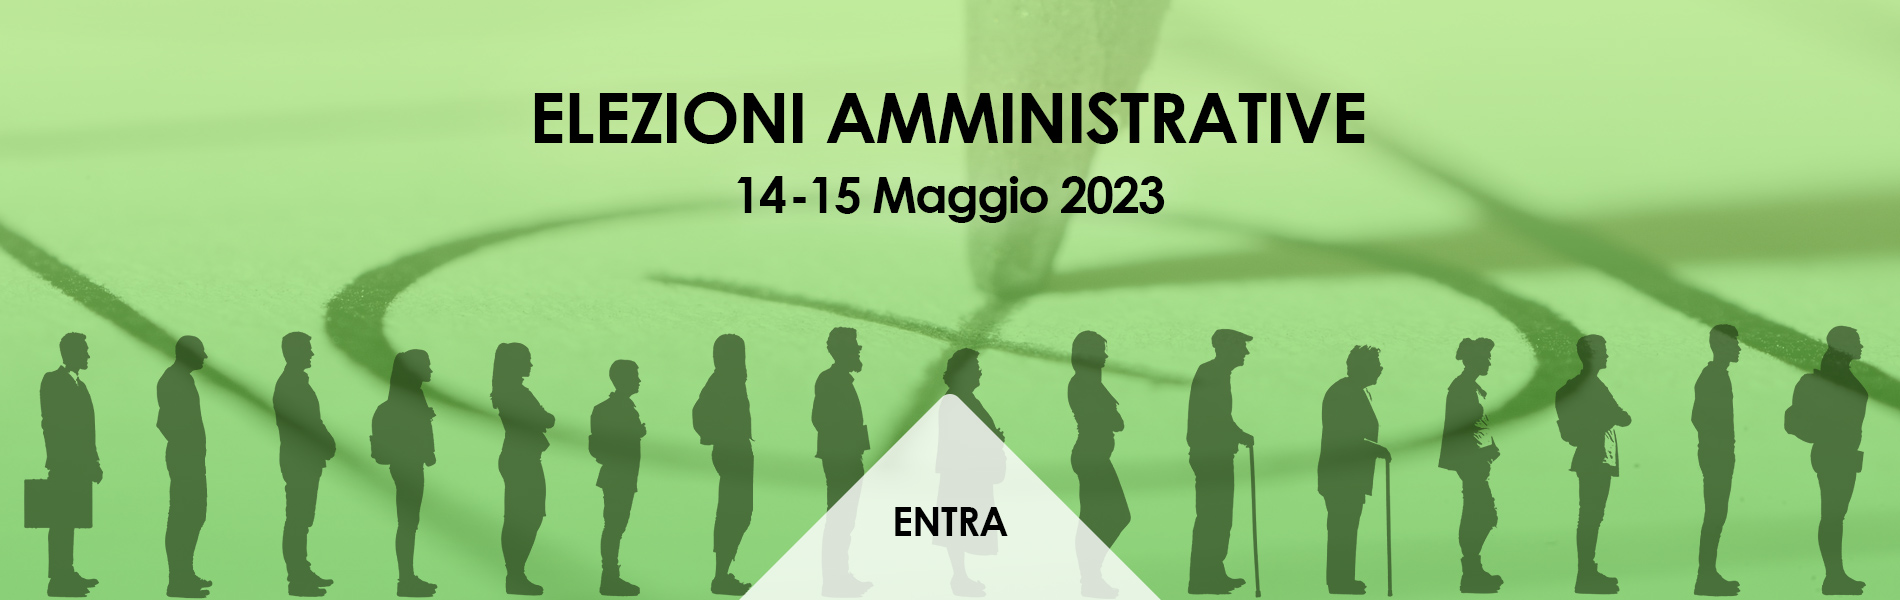 Elezioni Amministrative - 14/15 Maggio 2023